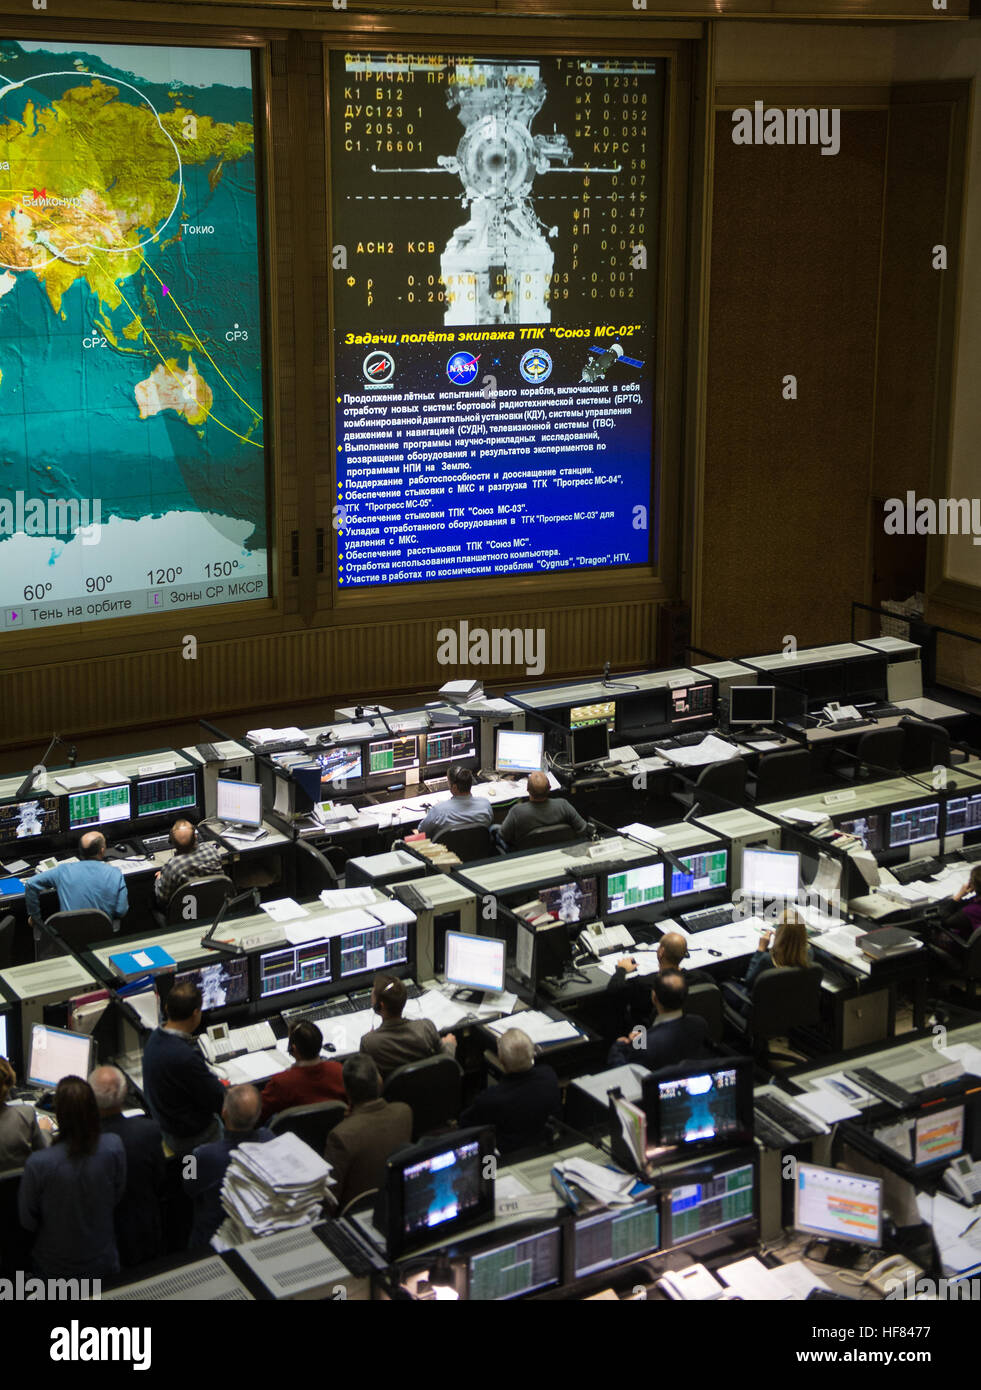 Una vista en directo de la Estación Espacial Internacional, como se ha visto por las cámaras a bordo de la nave espacial Soyuz MS-02 con expedición 49-50 tripulantes Shane Kimbrough, de la NASA, Sergey Ryzhikov de Roscosmos, y Andrey Borisenko de Roscosmos a bordo, se ve en la pantalla del Centro de Control de Misión en Moscú como la nave enfoques para el acoplamiento, el viernes, 21 de octubre de 2016 en Korolov, Rusia. El Soyuz MS-02 naves portadoras Kimbrough, Ryzhikov y Borisenko acoplado a las 5:52 A.M. EDT EL VIERNES, 21 de octubre de 251 Estatuto millas sobre el sur de Rusia y se unió a la expedición 49 Comandante Anatoly Ivanishin de Roscosmos y vuelo Foto de stock